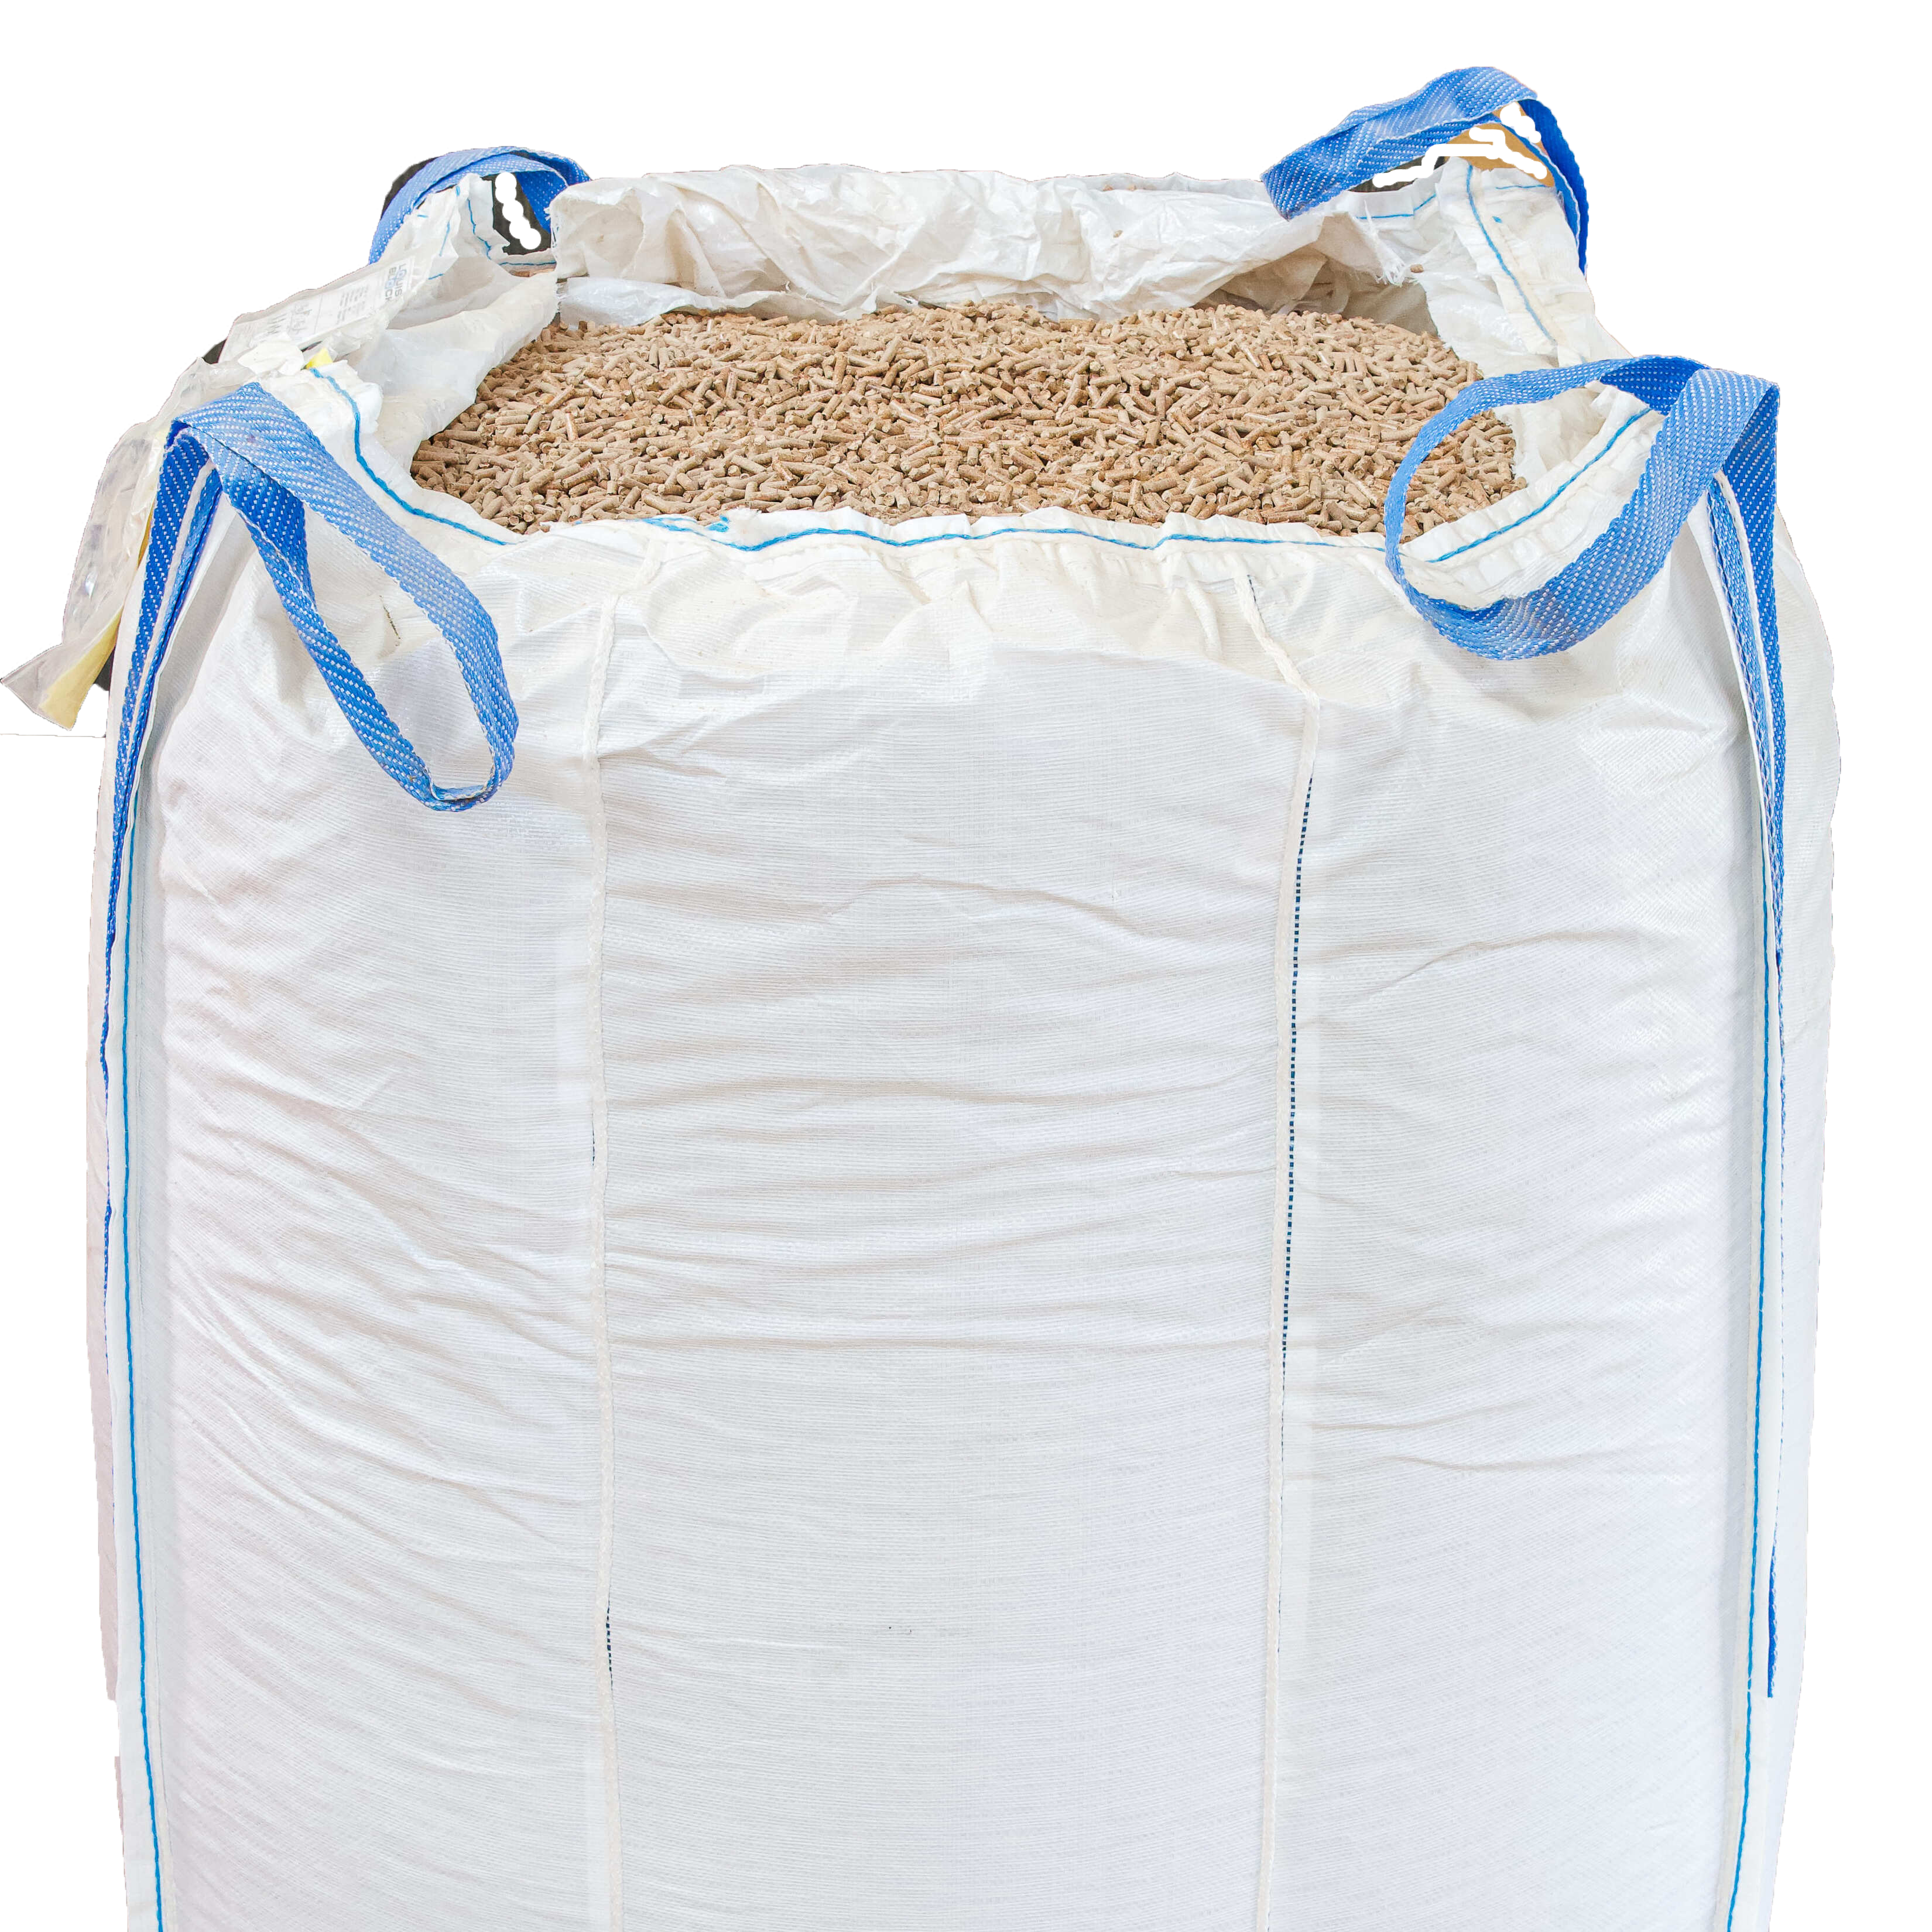 metalen Thermisch Discriminatie op grond van geslacht Hout pellets - big bag - PPF Houtpellets